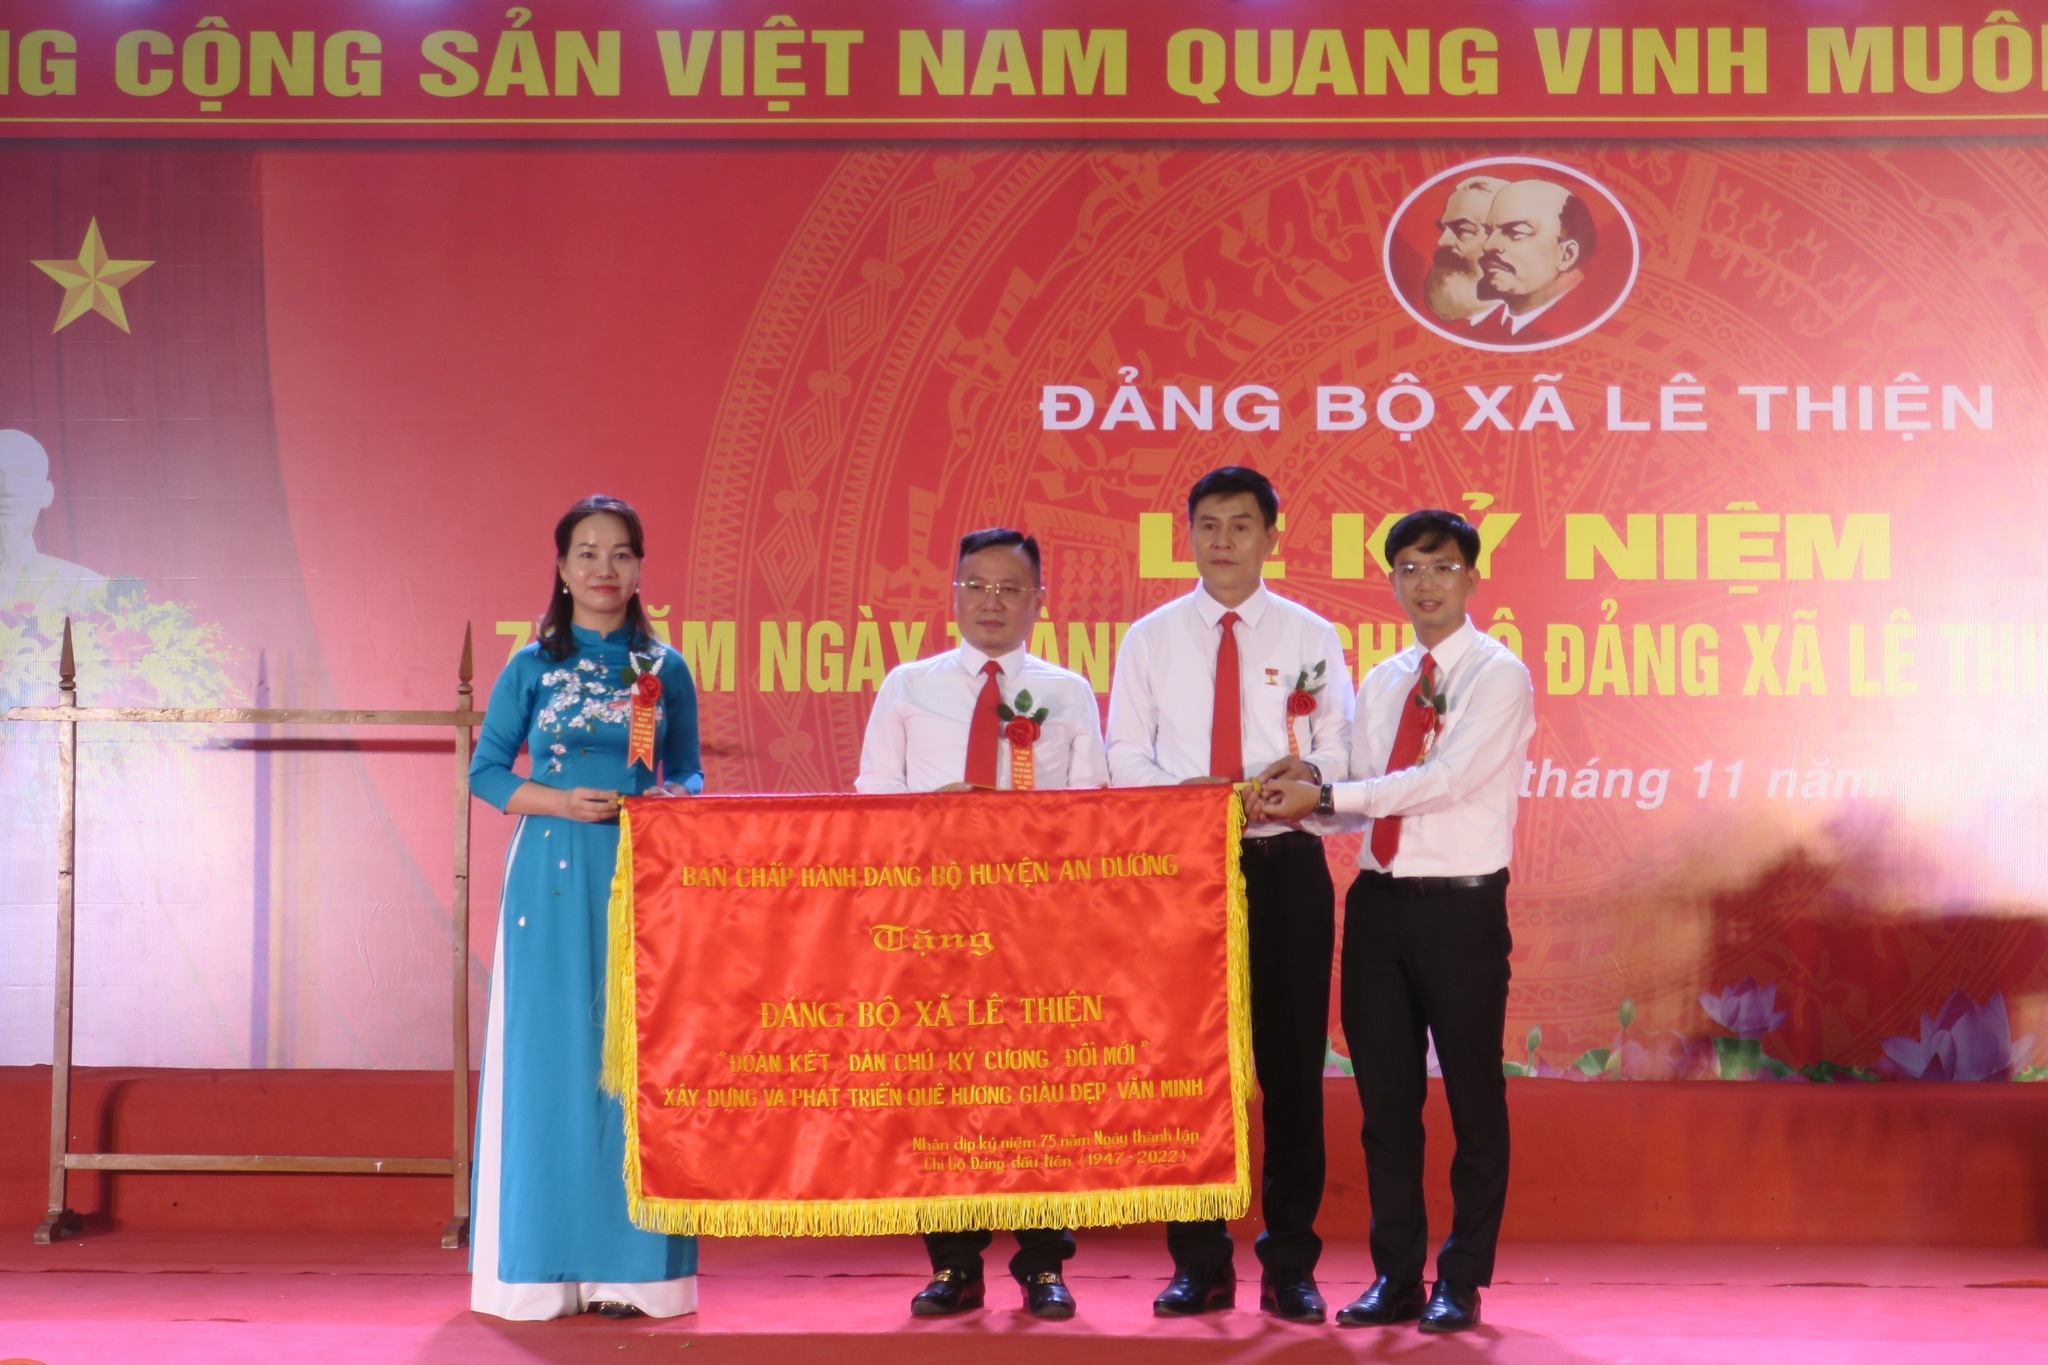 Lãnh đạo huyện An Dương trao bức trướng tặng Đảng bộ, chính quyền và nhân dân xã Lê Thiện 